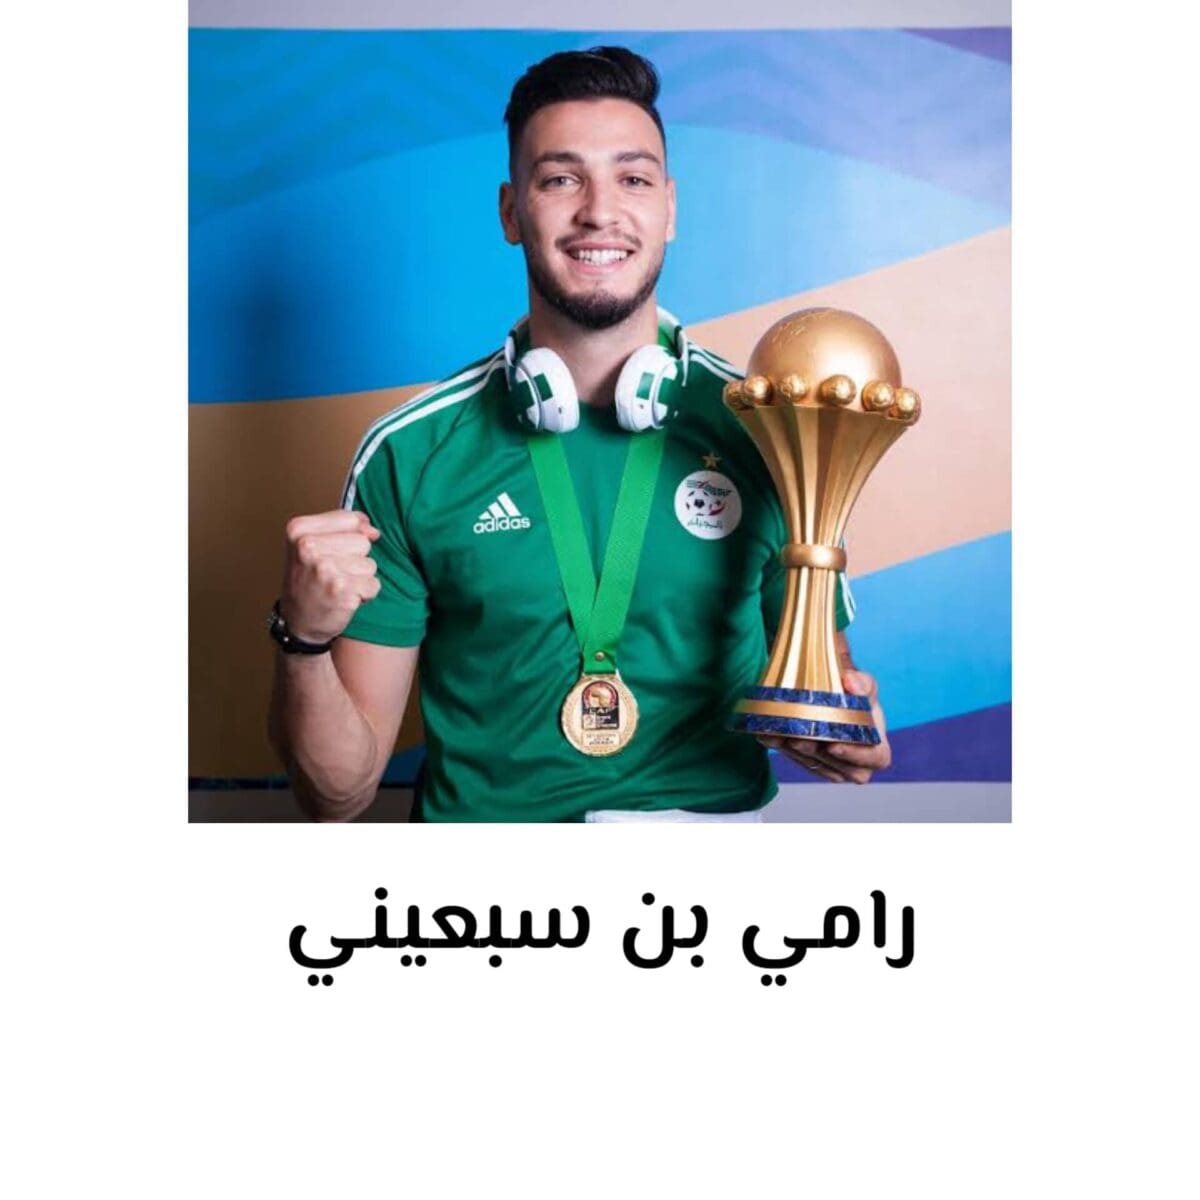 رامي بن سبعيني لاعب منتخب الجزائر